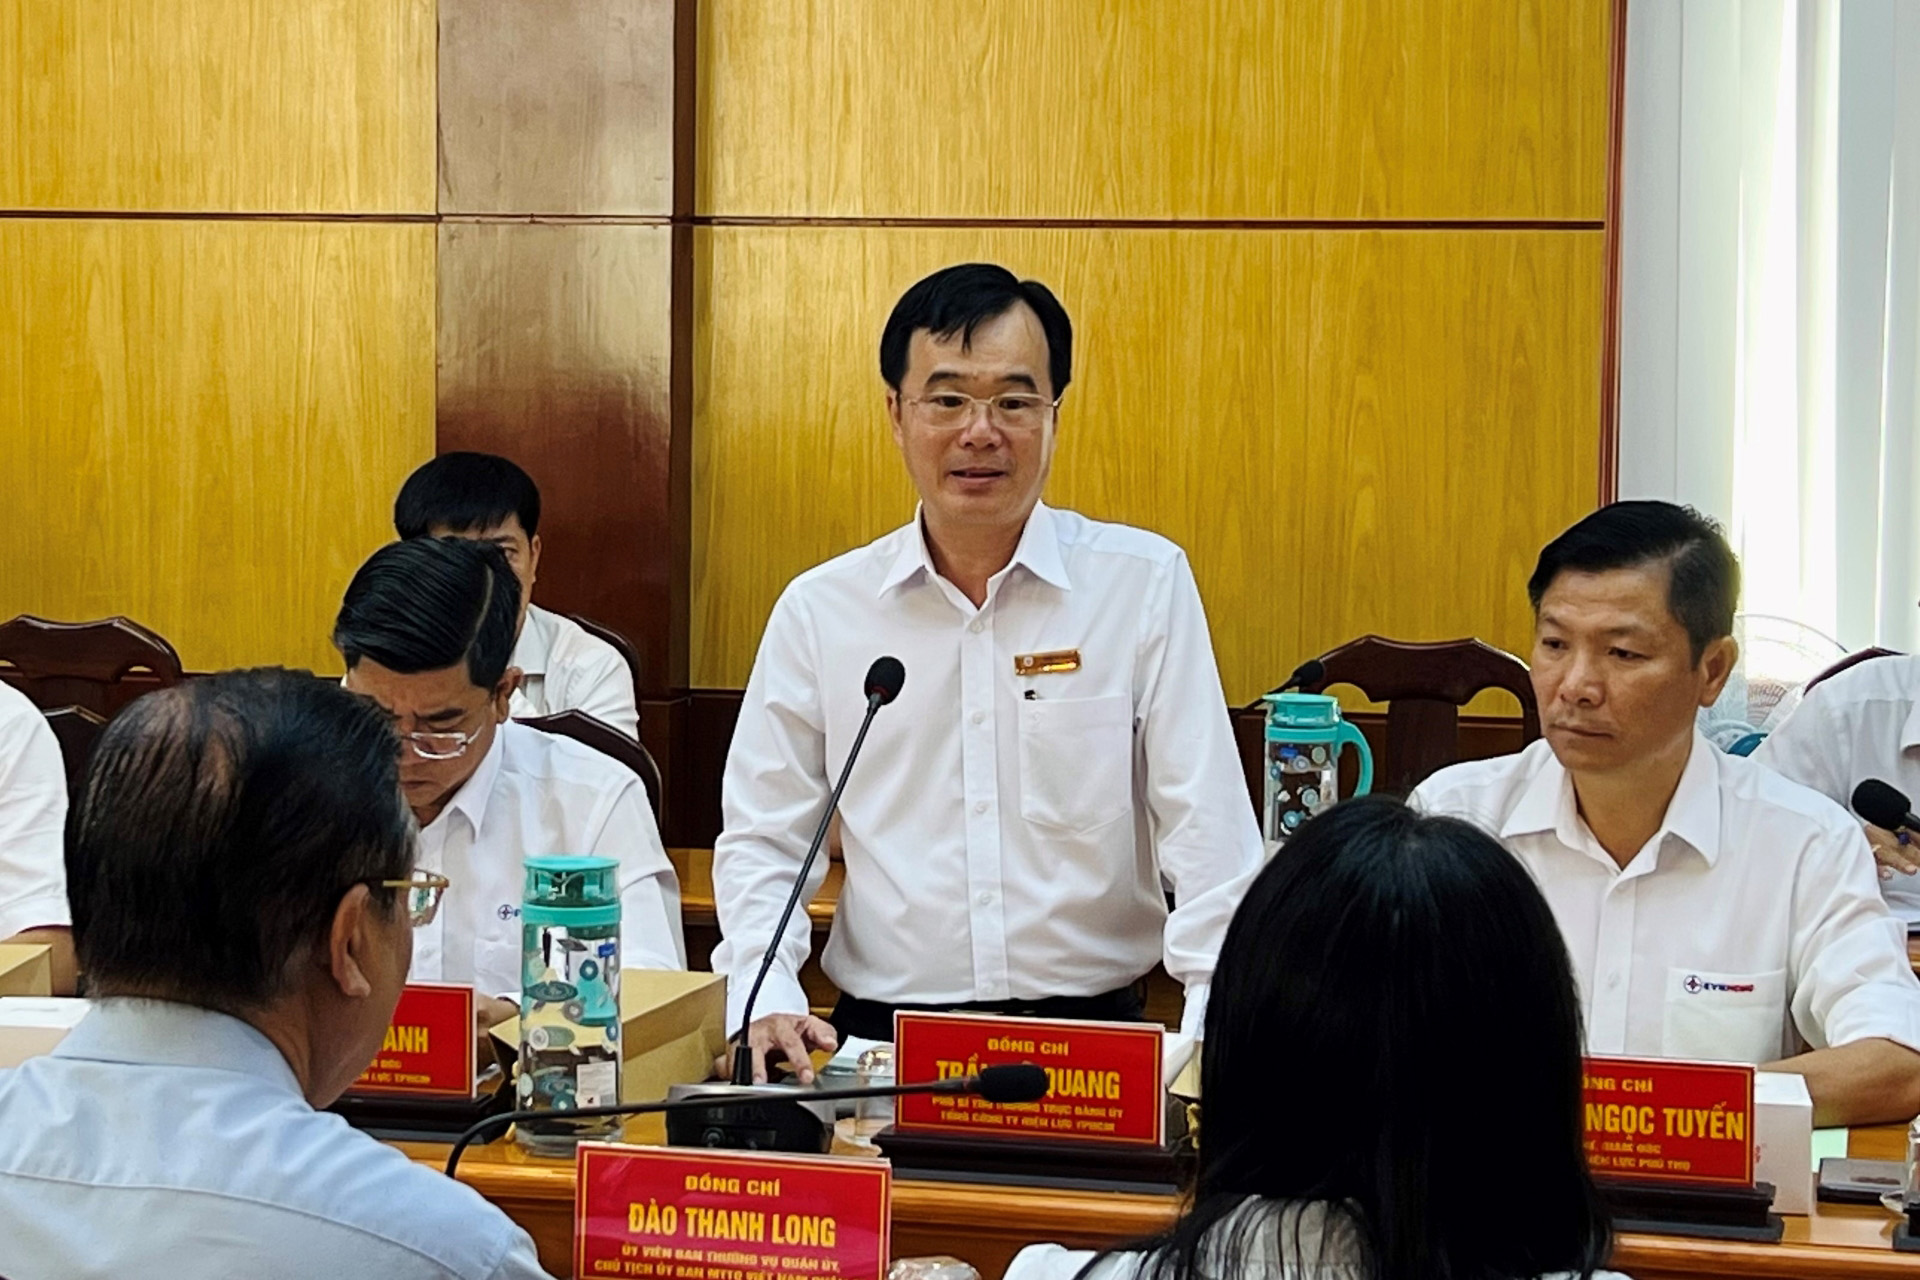 Đồng chí Trần Vũ Quang - Phó Bí thư Thường trực Đảng ủy EVNHCMC phát biểu tại hội nghị.